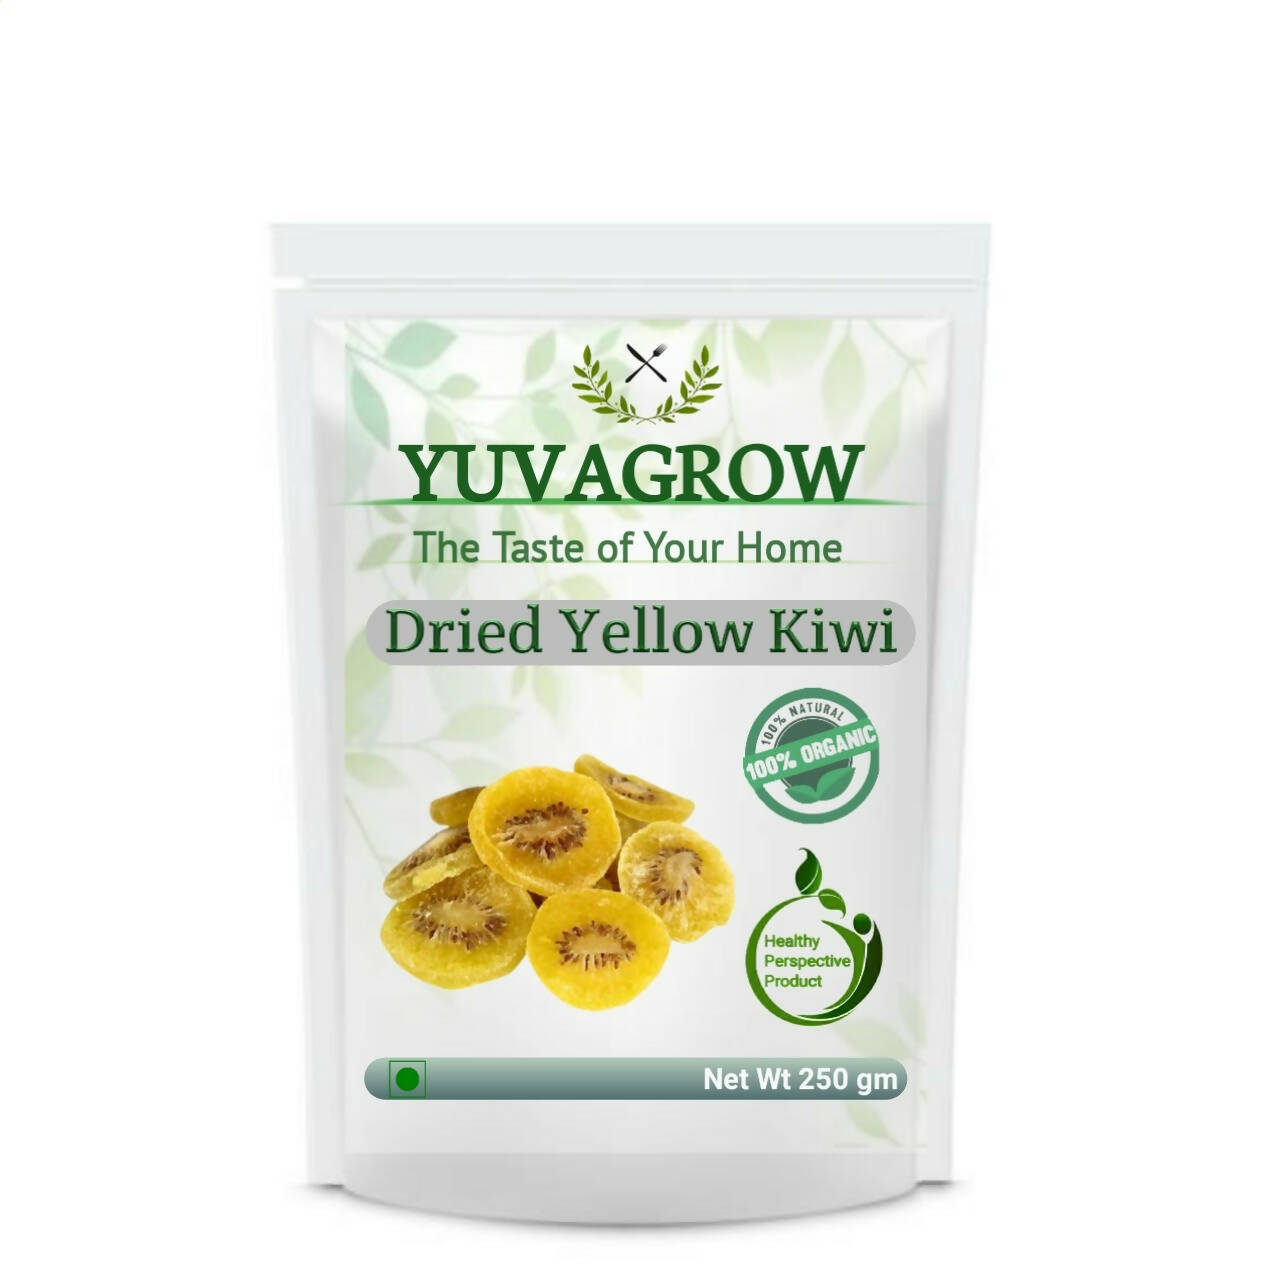 Yuvagrow Dried Yellow kiwi Slices - buy in USA, Australia, Canada